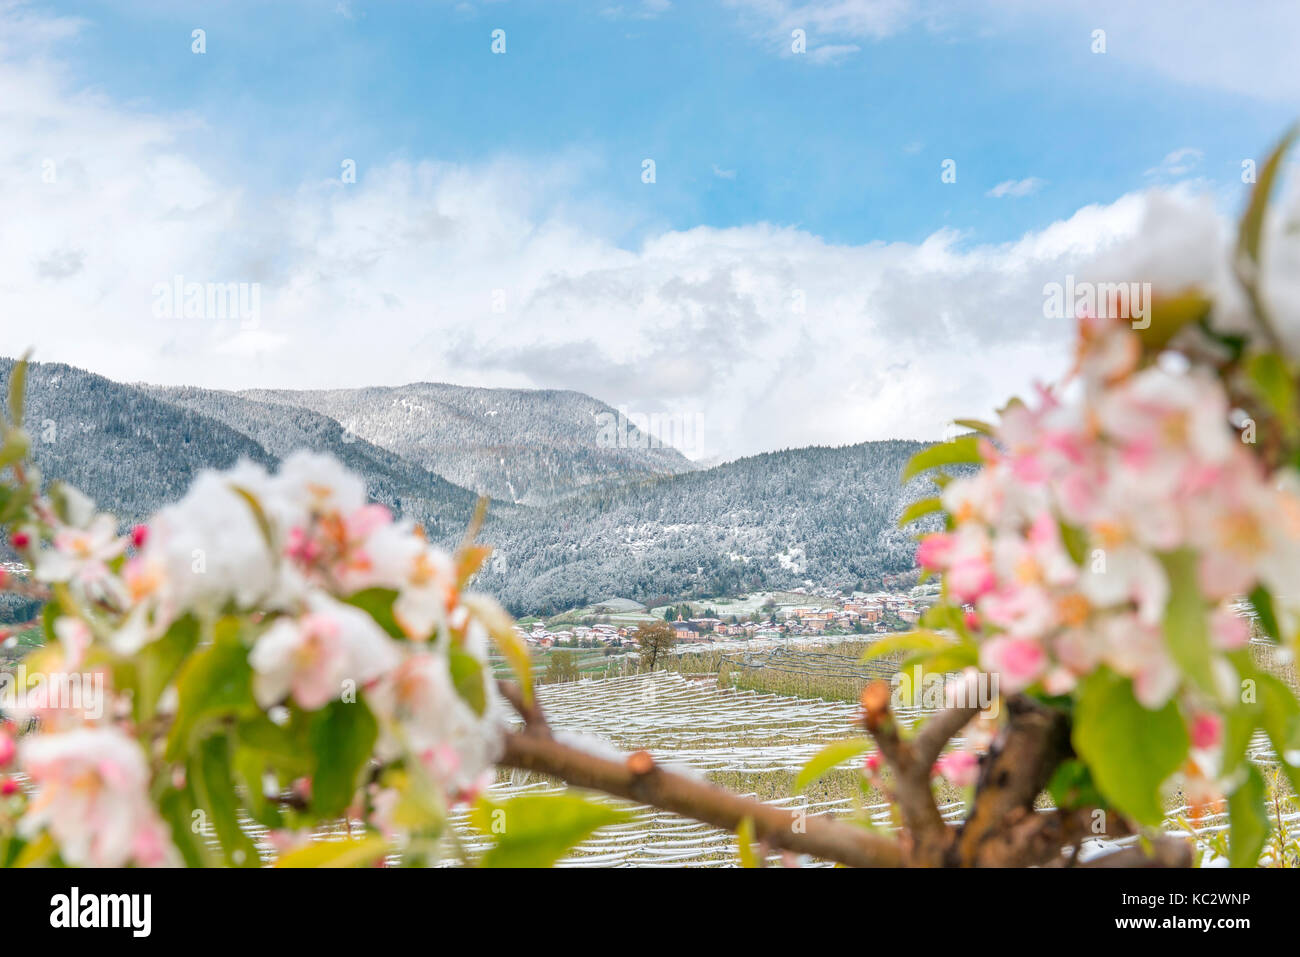 L'italia, trentino alto adige, Val di non, neve su apple fiorisce in un insolitamente freddo giorno di primavera. Foto Stock